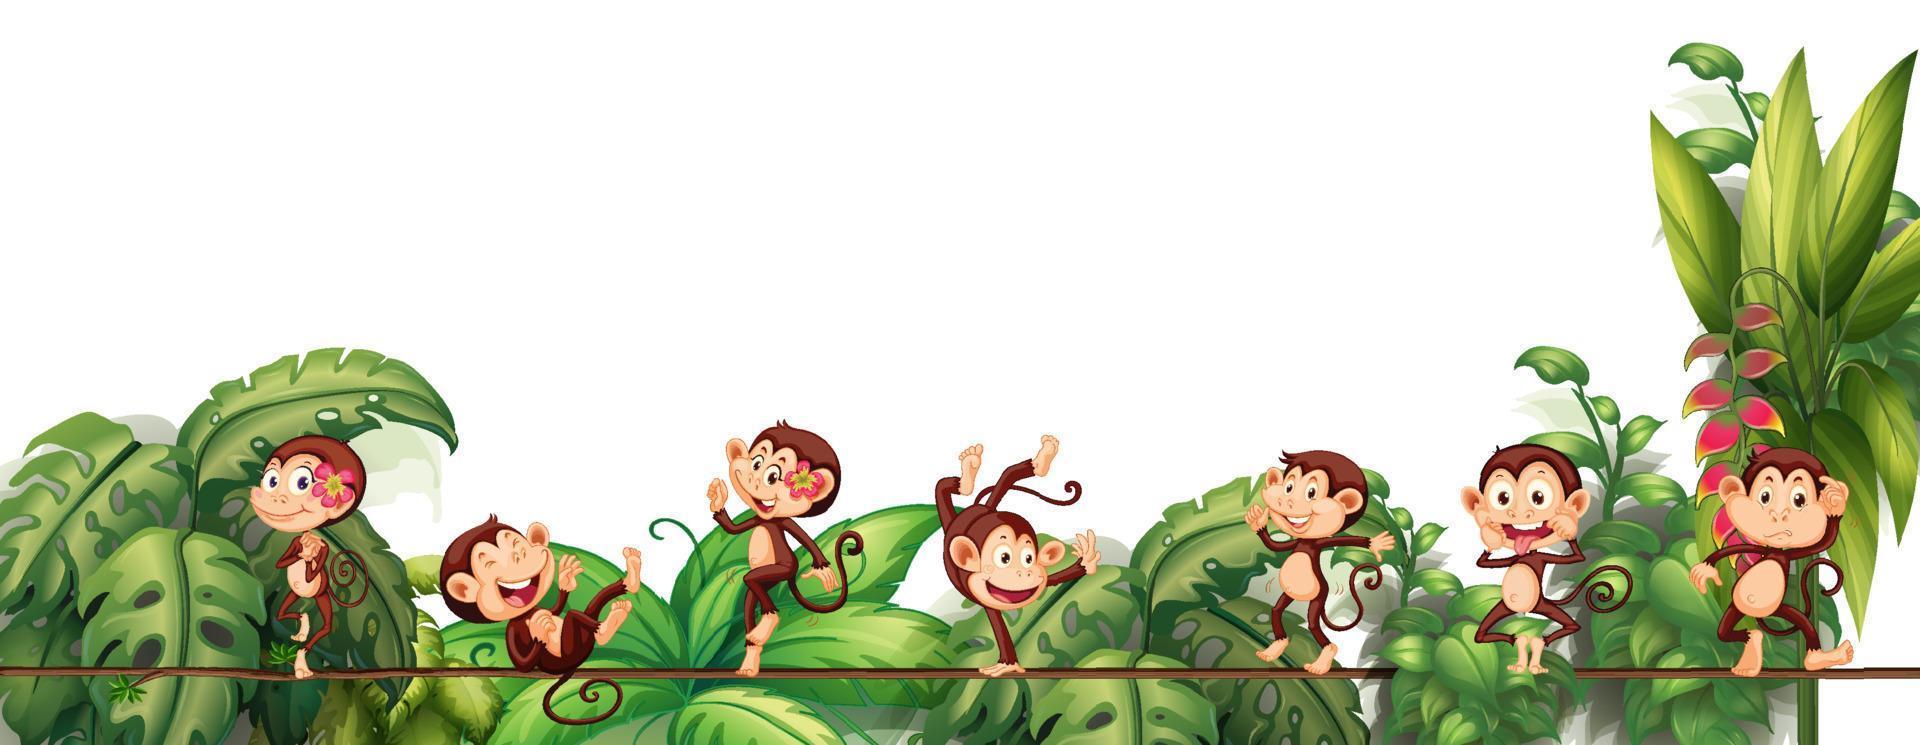 verschillende aap stripfiguren op het touw met tropisch blad vector